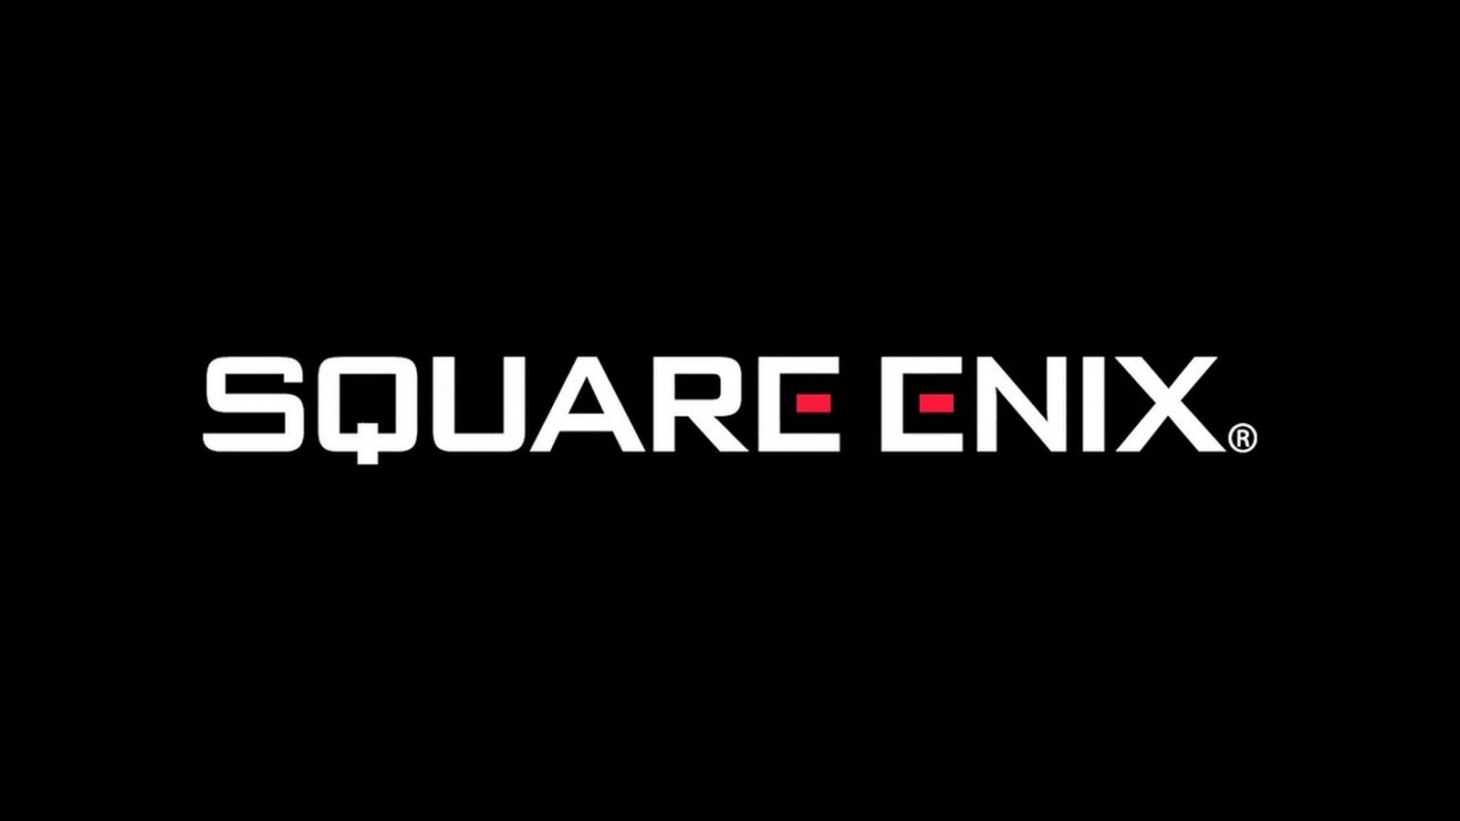 Похоже, Square Enix не планирует выпускать игры на Xbox в 2023 году: с сайта NEWXBOXONE.RU